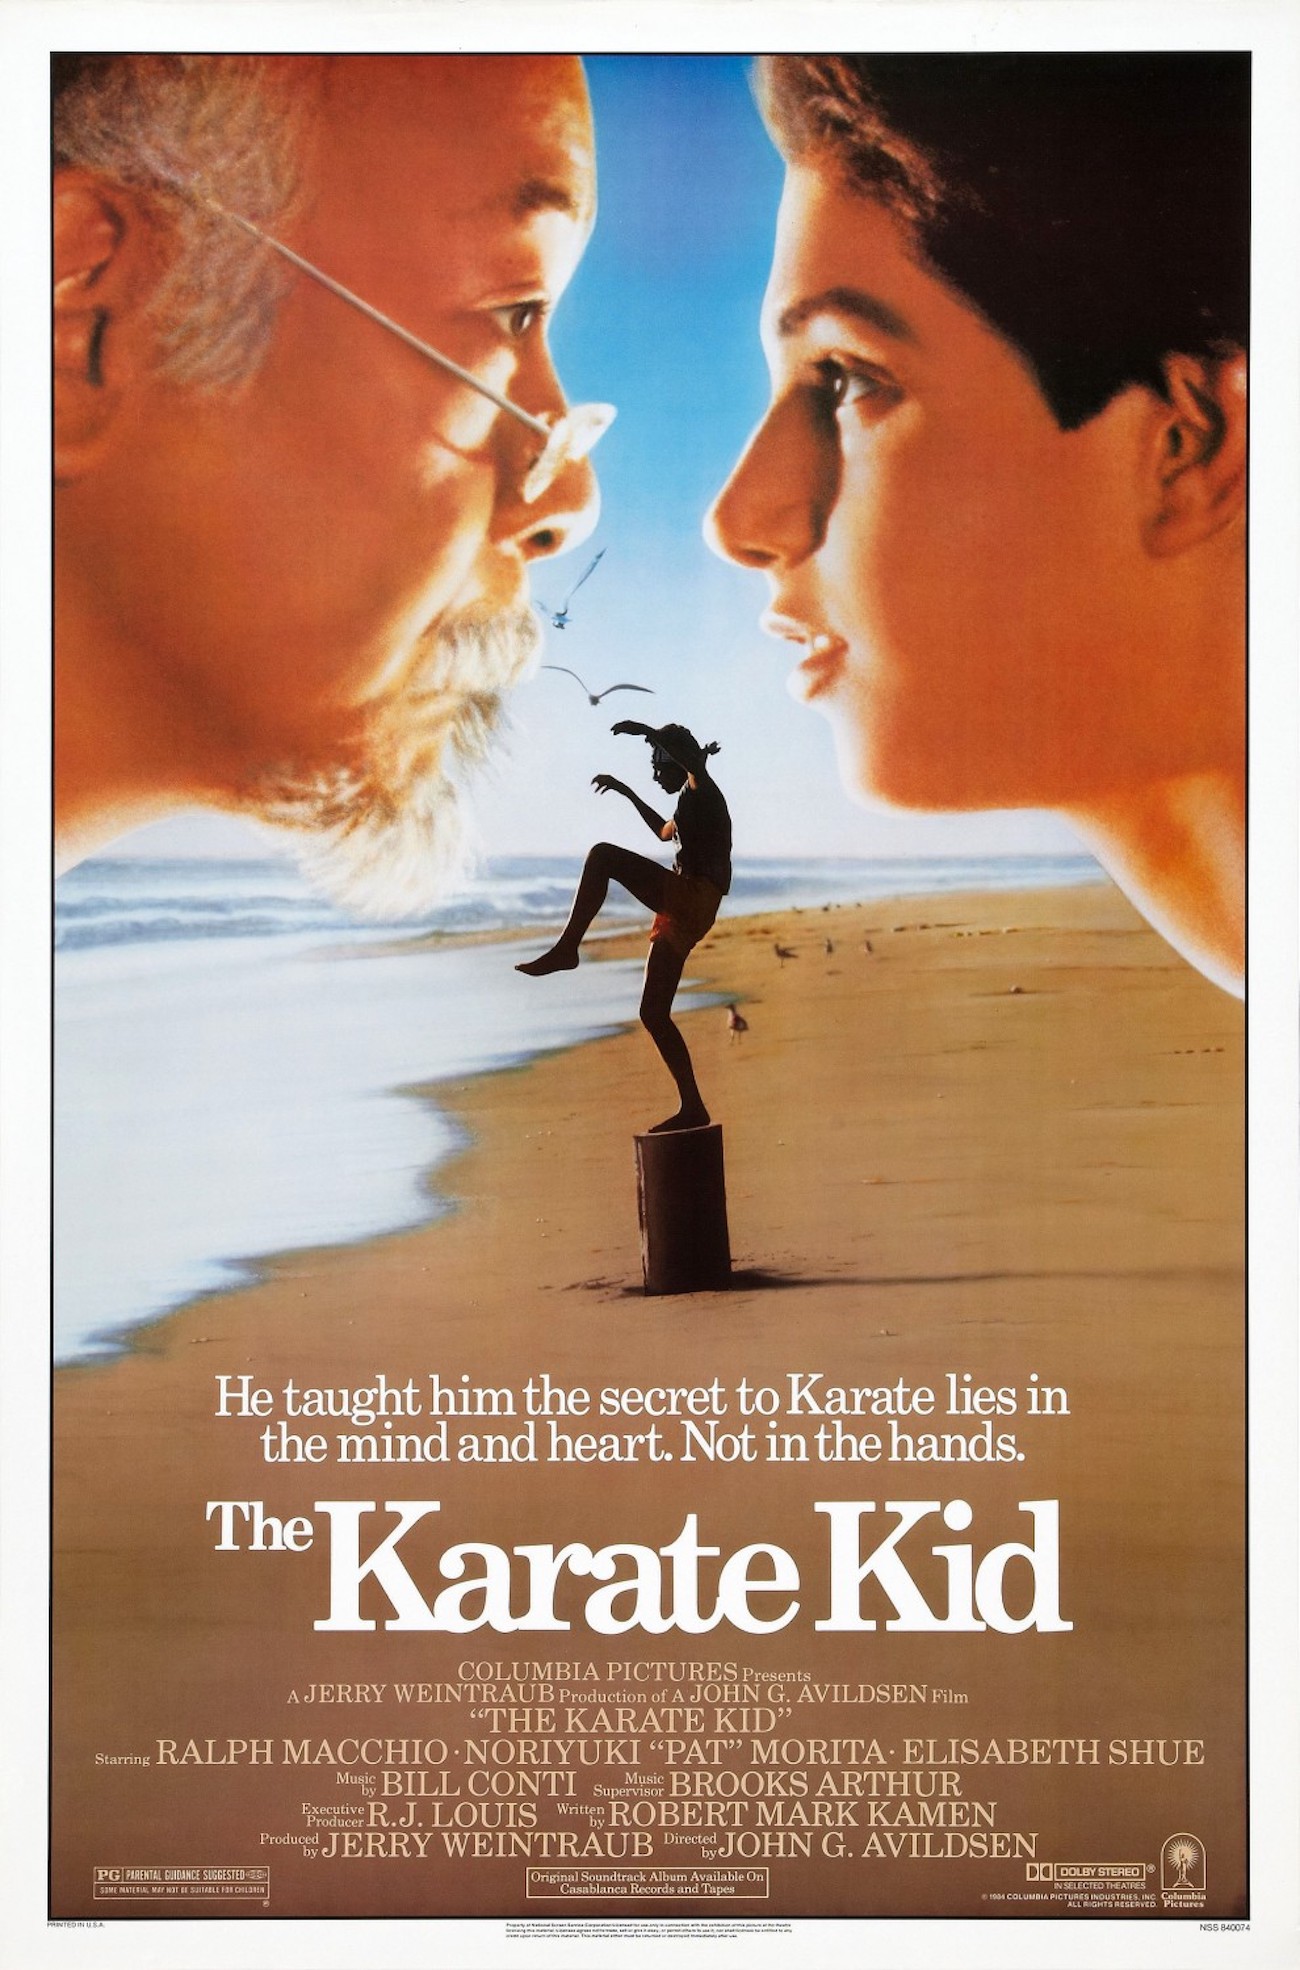 Karate kid poster